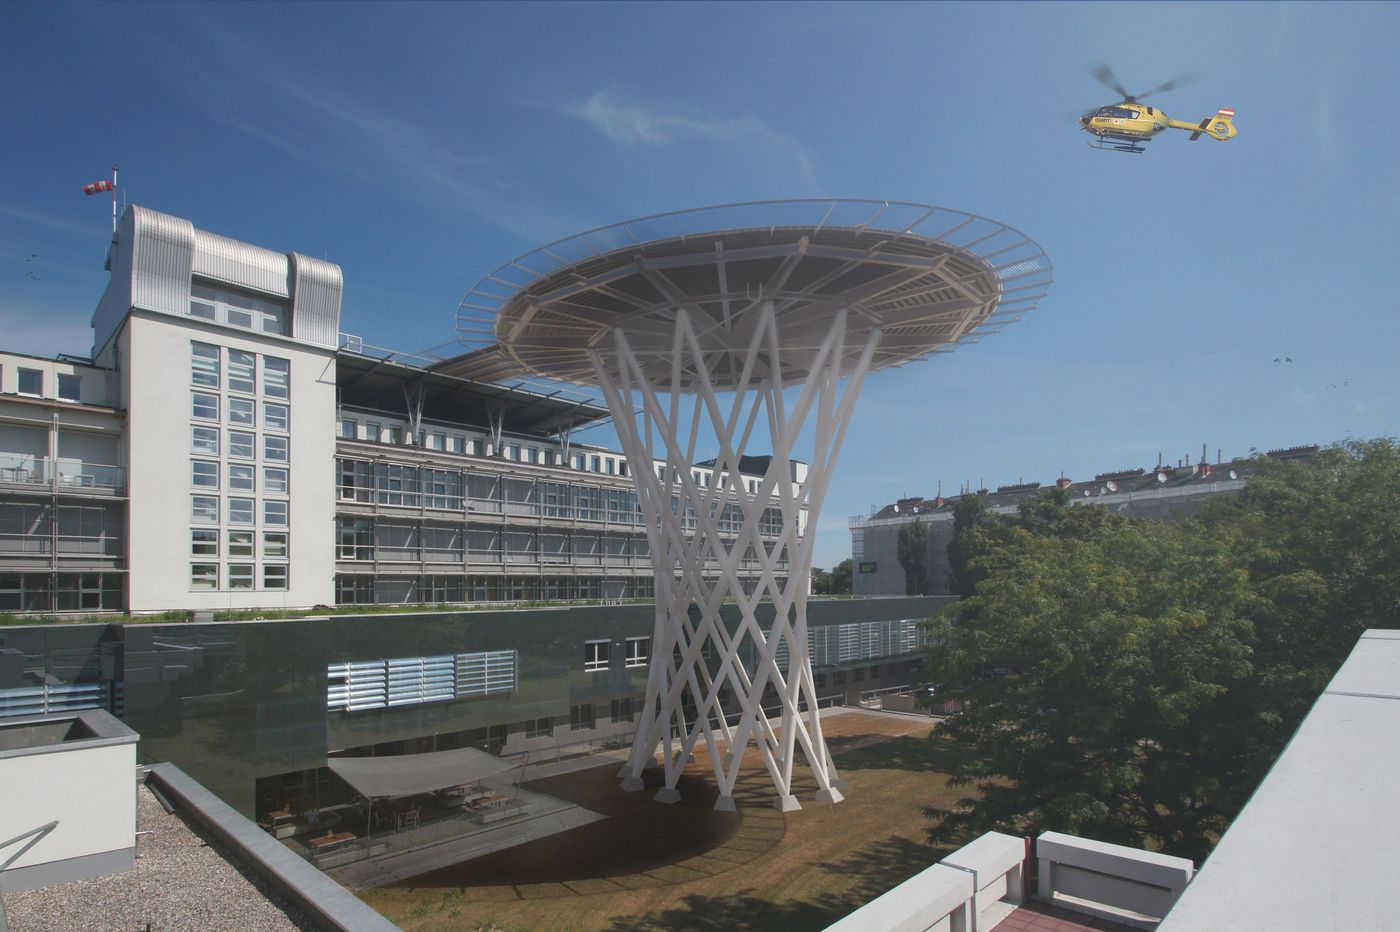 Visualisierung: runde Landeplatttform auf futuristisch wirkender, netzartiger Tragekonstruktion, durch Brücke verbunden mit dem Krankenhaus im Hintergrund; am Himmel ein Hubschrauber im Landeanflug.